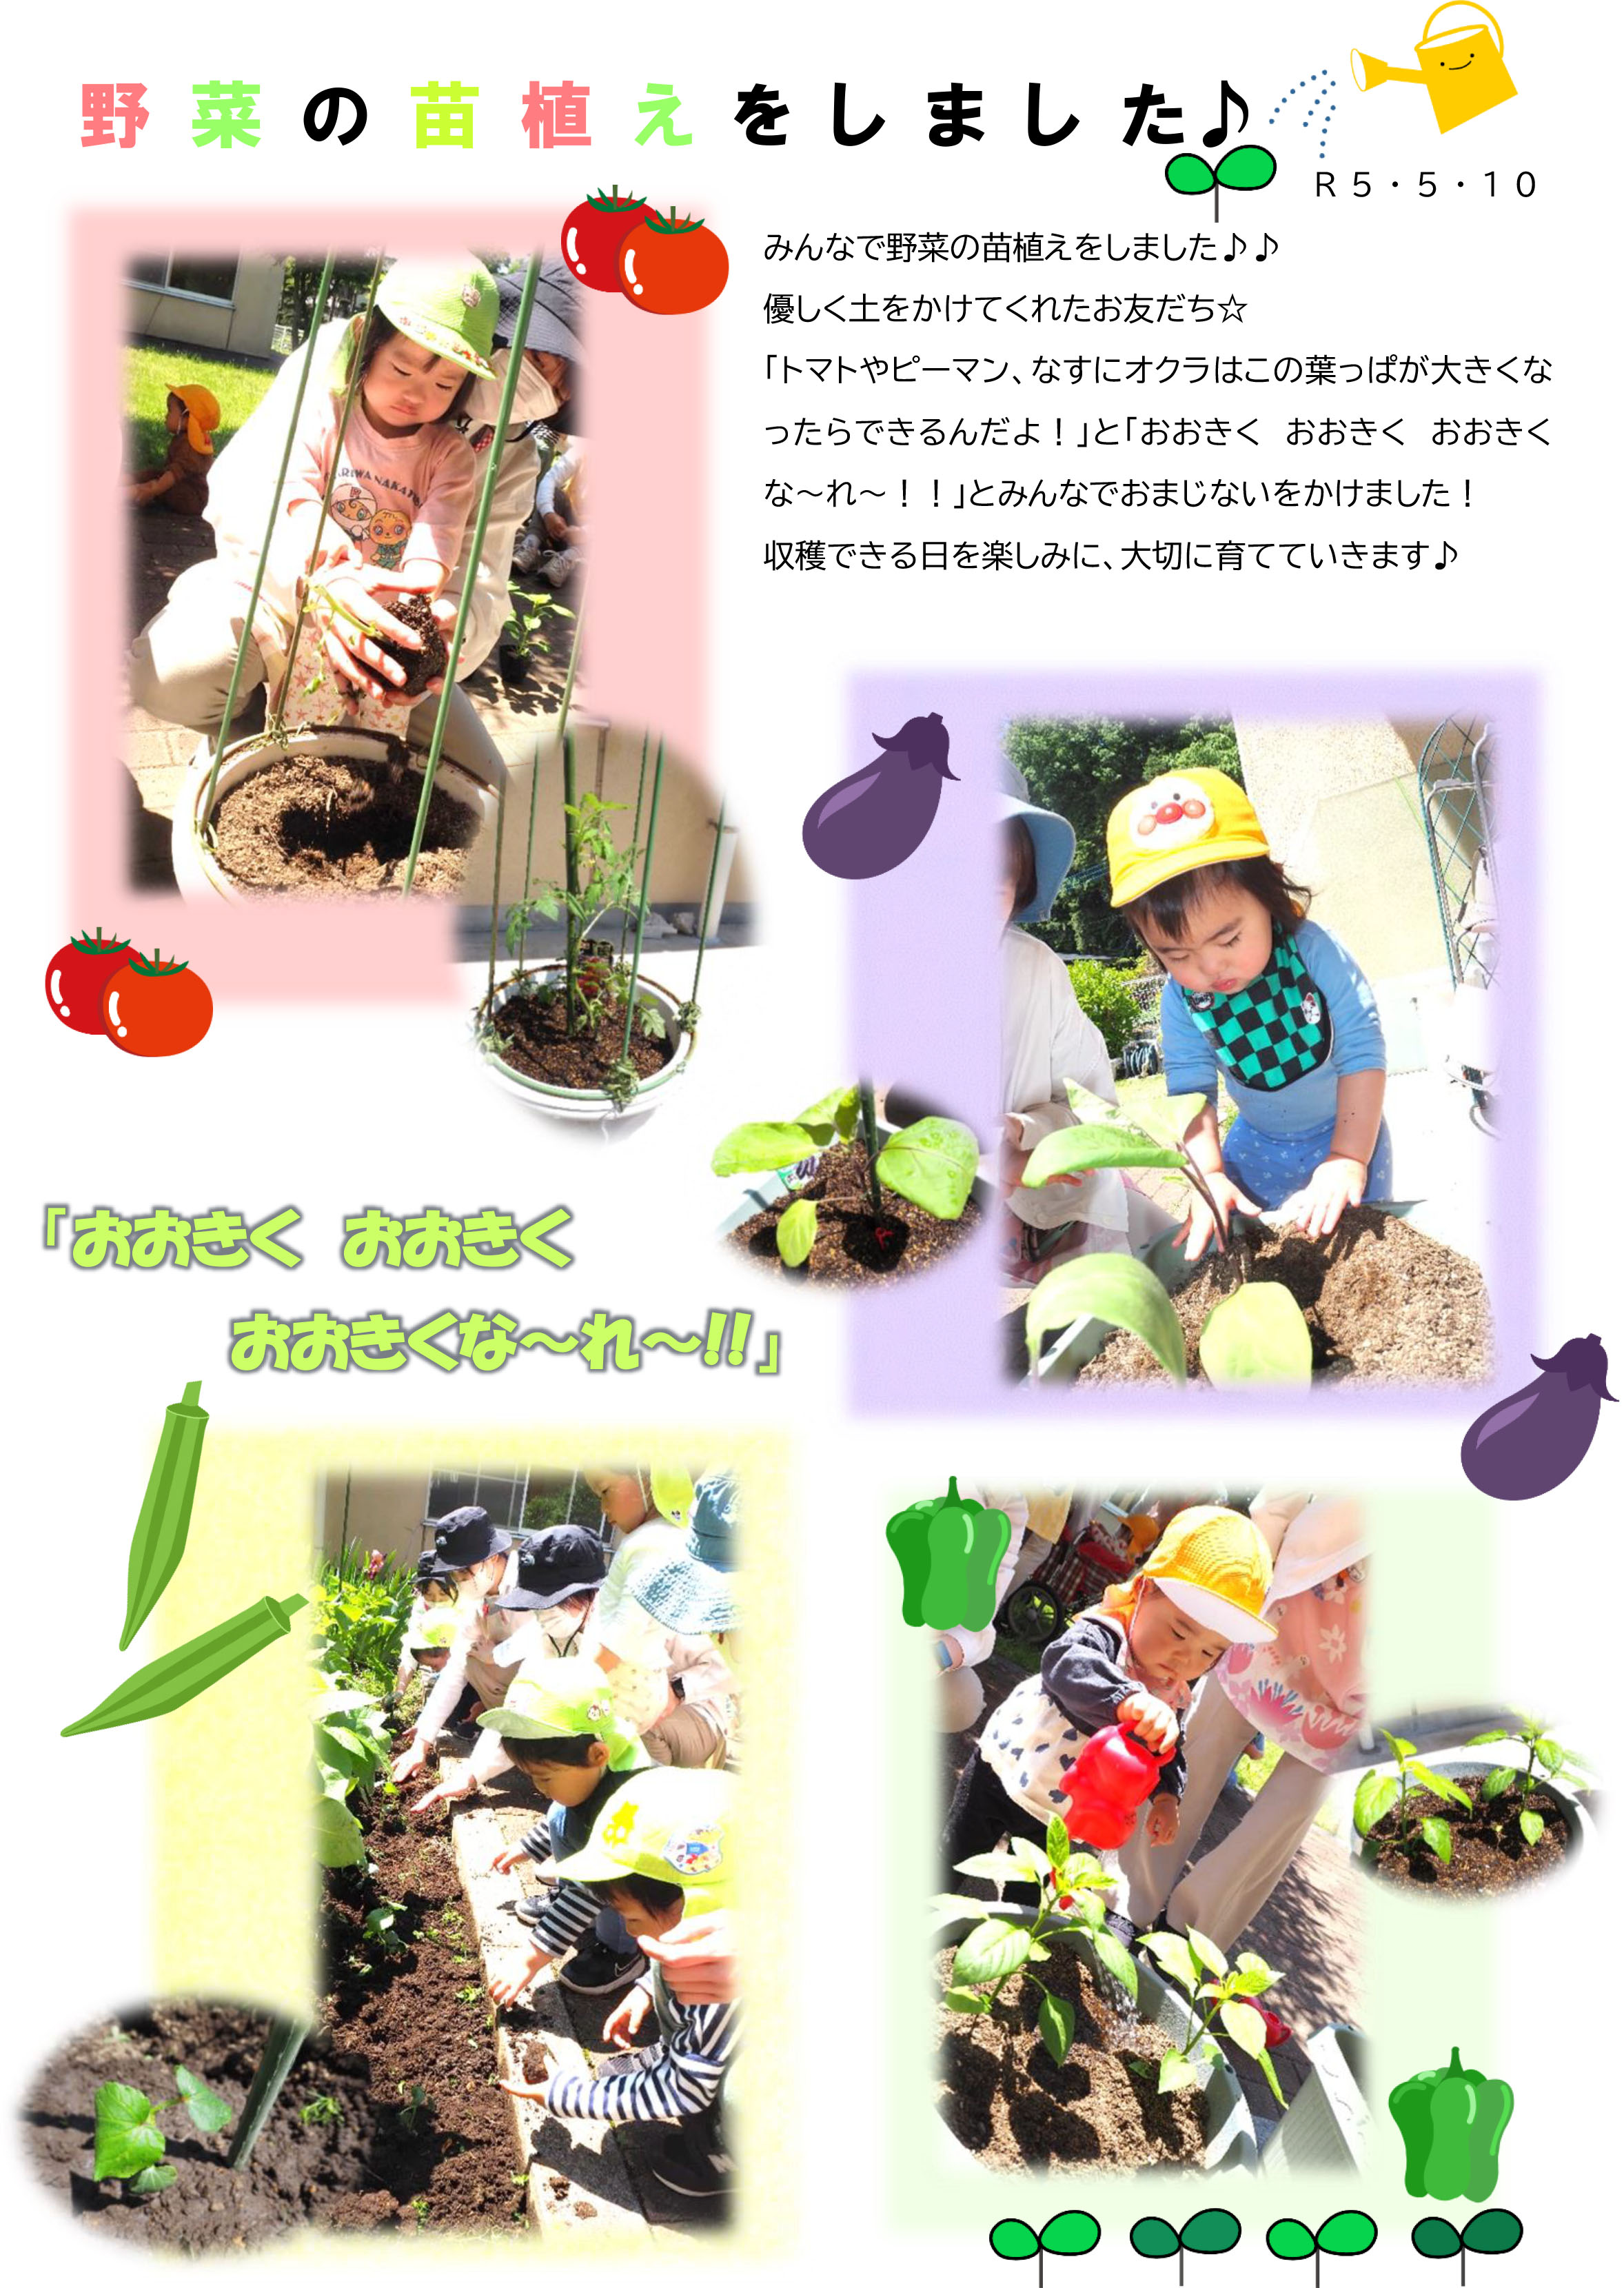 栃木県宇都宮市小規模保育園-野菜の苗植えをしました